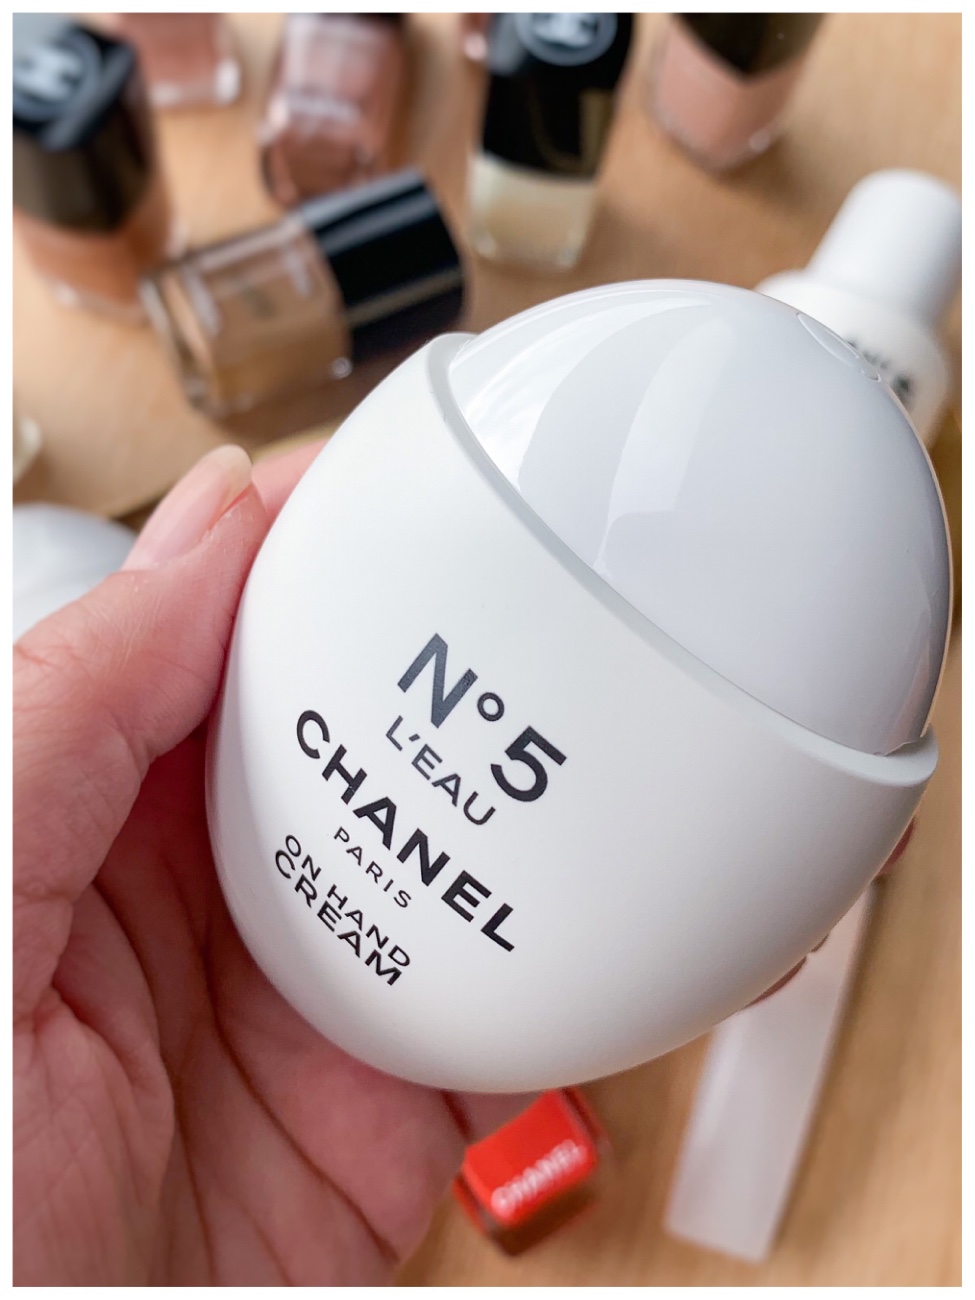 Chanel N°5 L'Eau On Hand Cream